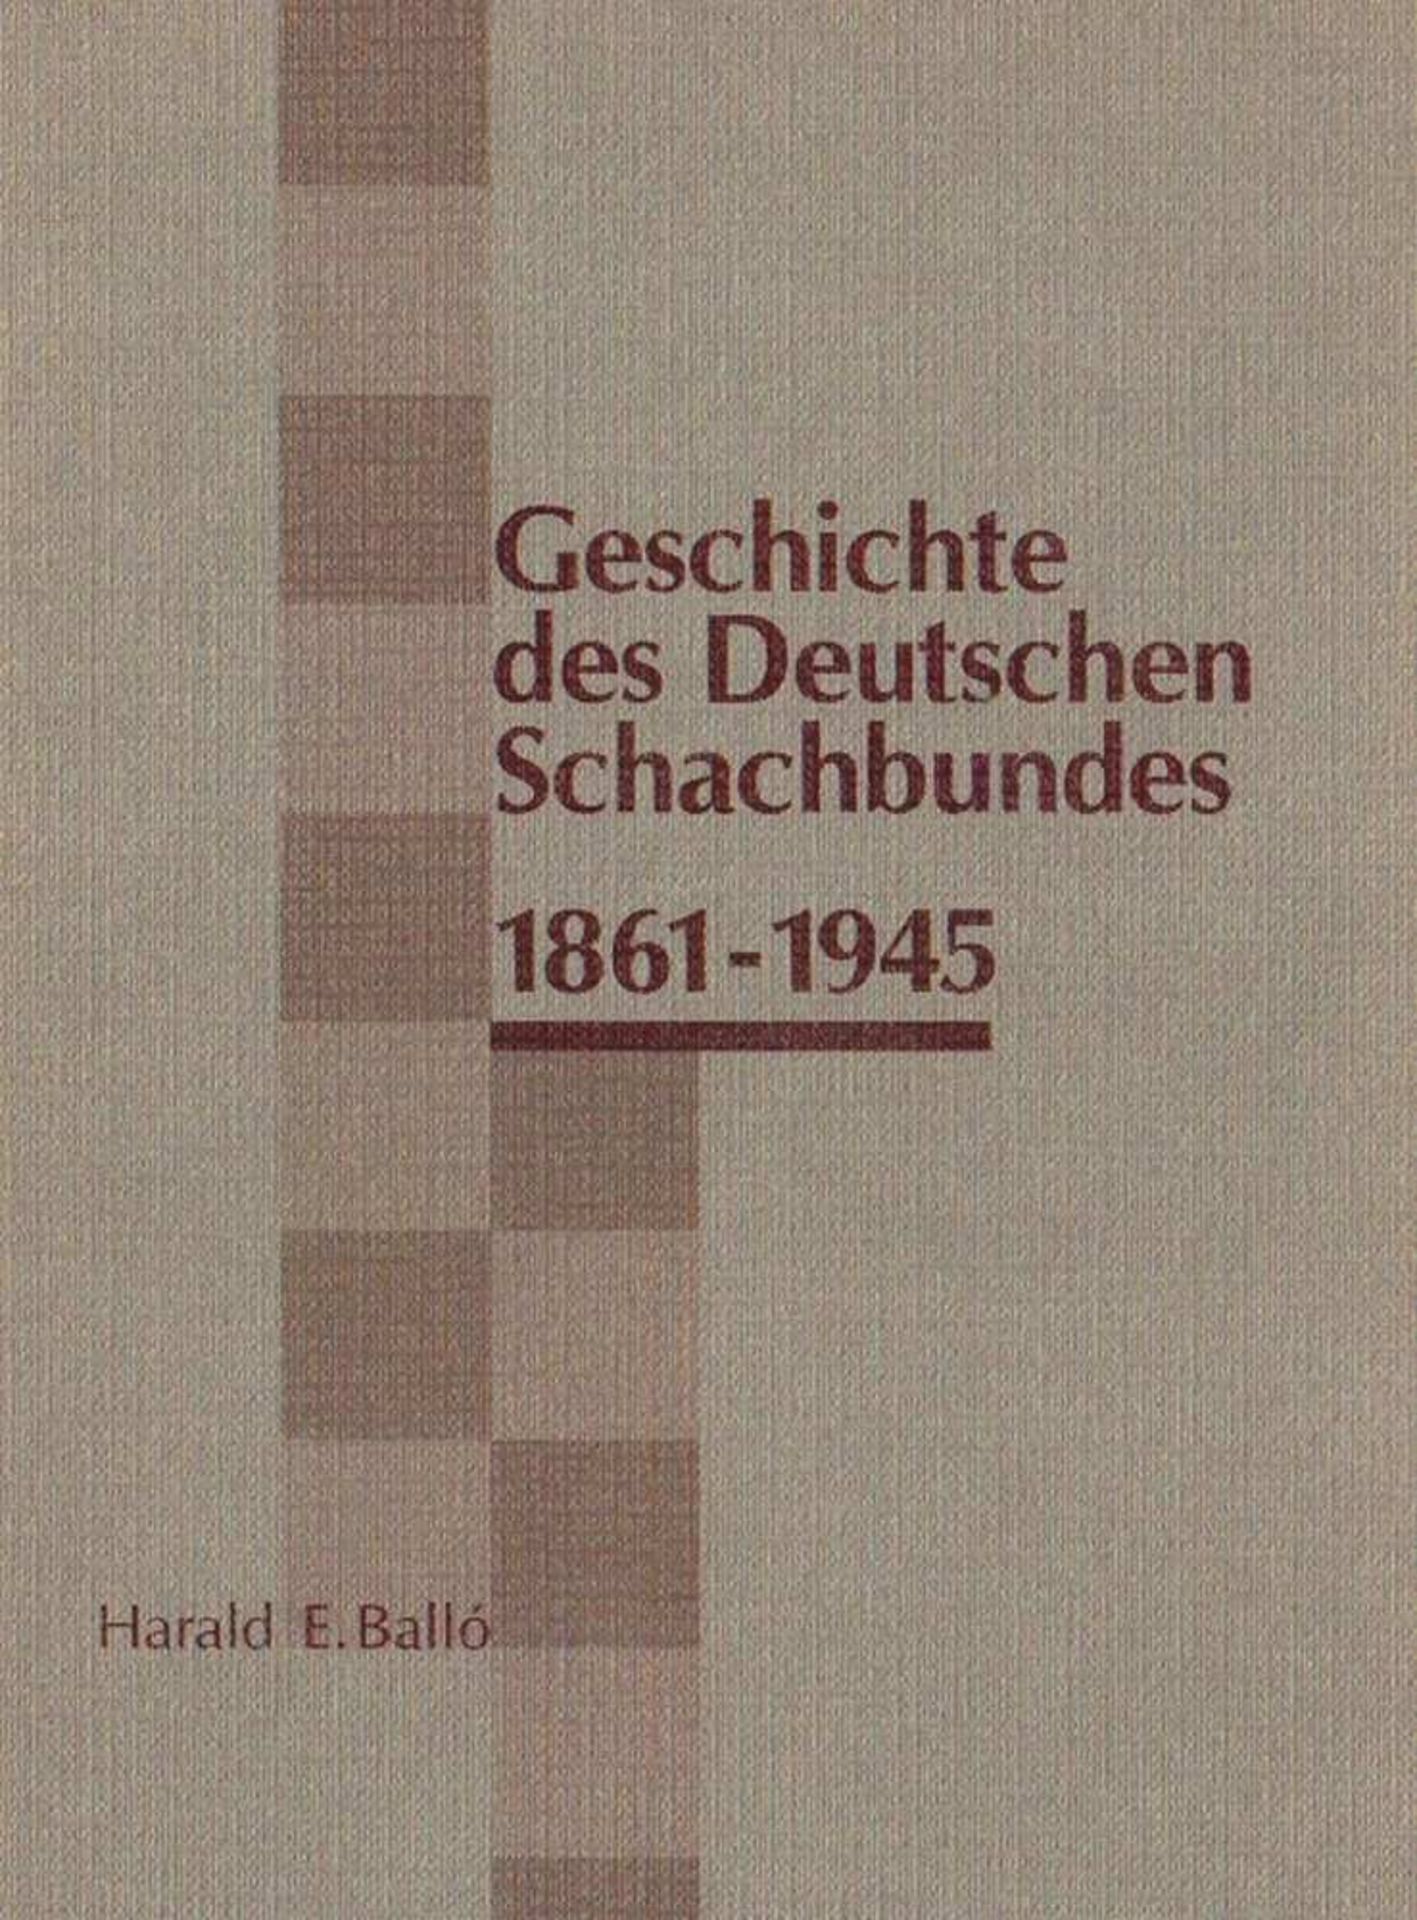 Deutscher Schachbund. Balló, Harald E. Geschichte des Deutschen Schachbundes 1861 - 1945. Wesseling,